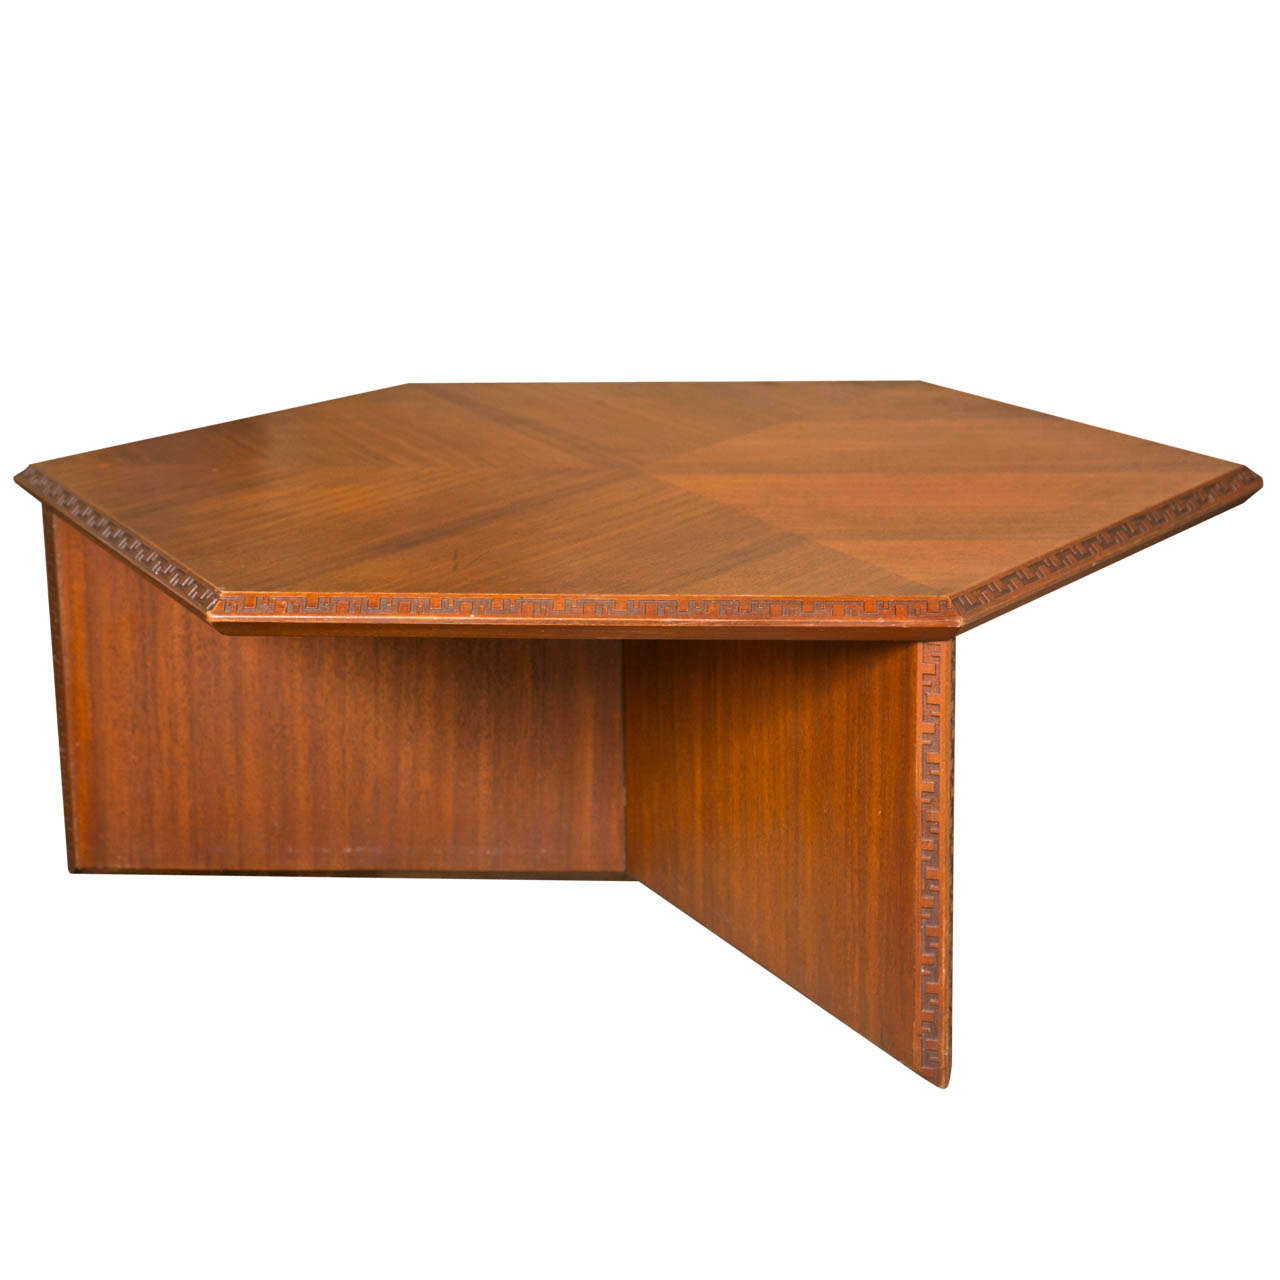 Coffee Table By Frank Lloyd Wright